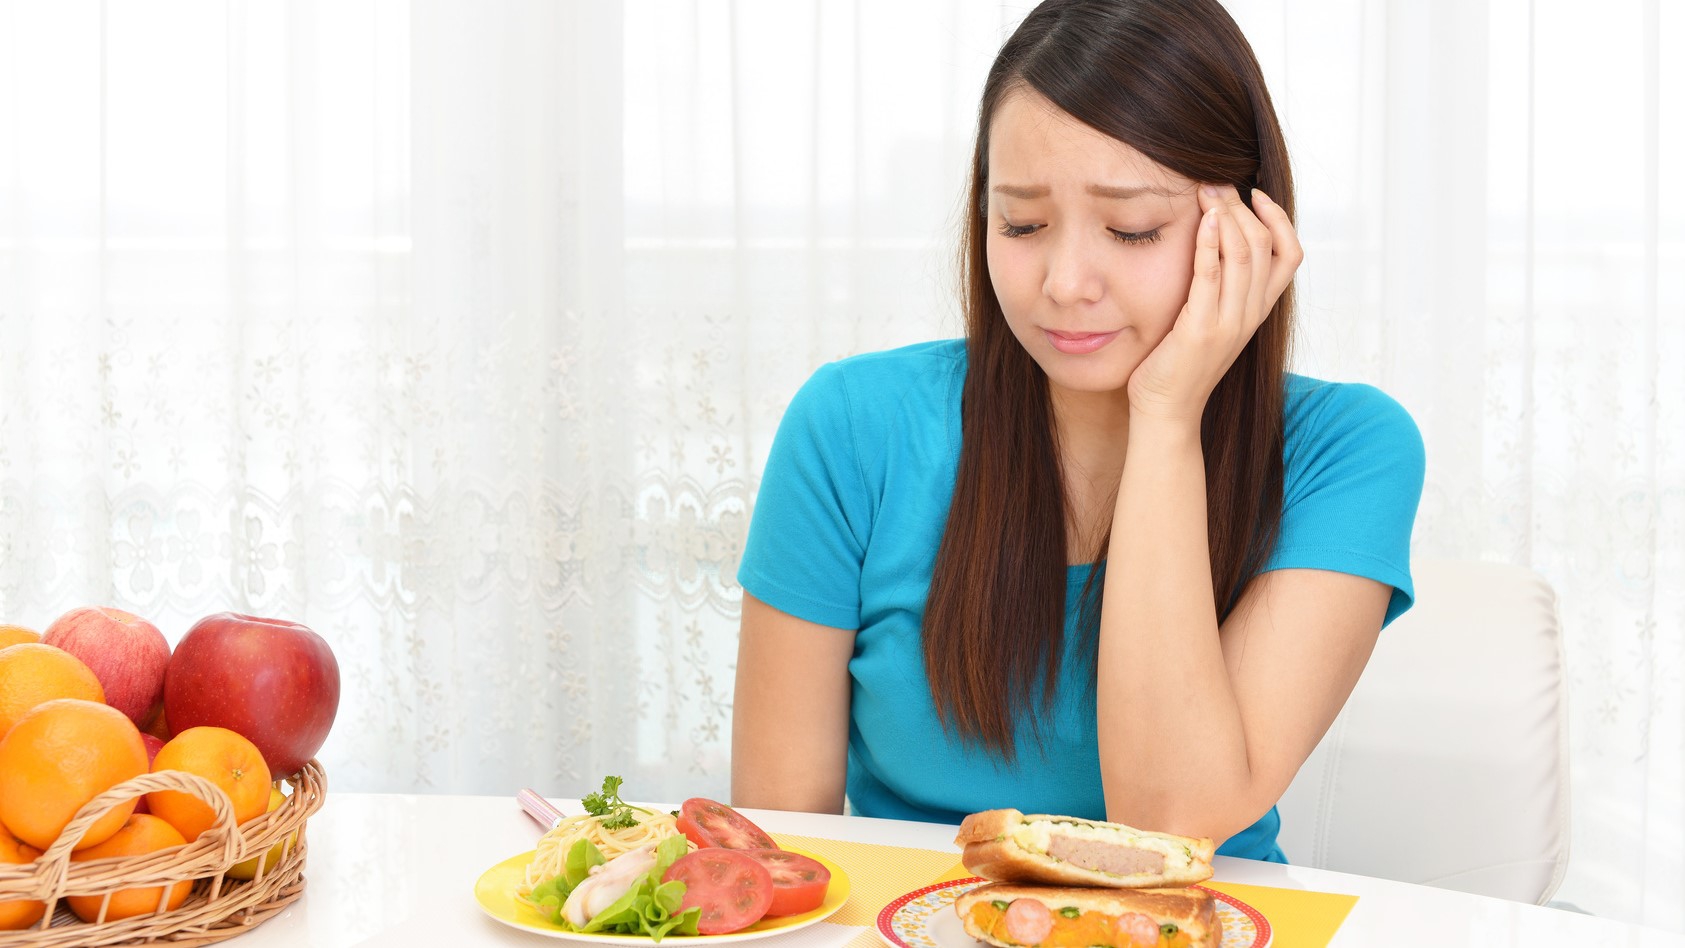 Bao lâu thì có thể ăn các loại thức ăn cứng sau khi nhổ răng số 8?
